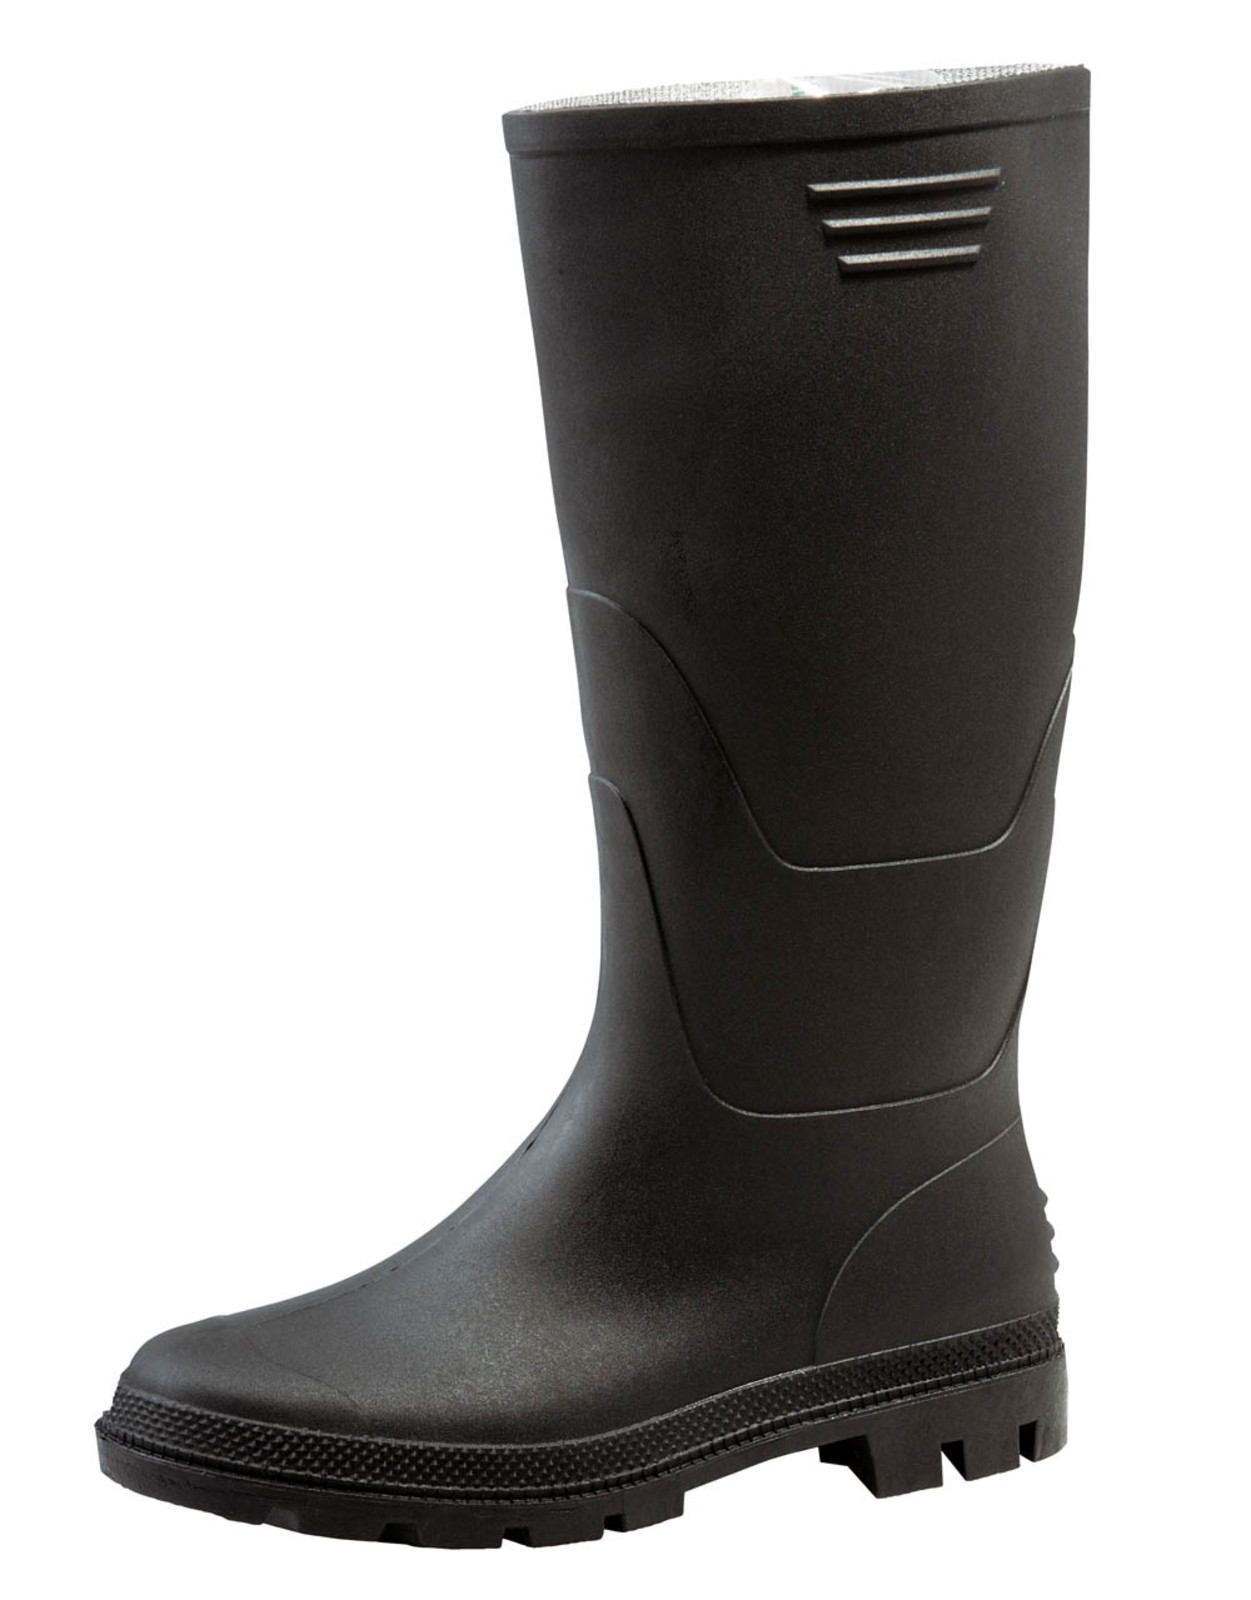 Gumáky Boots Ginocchio PVC - veľkosť: 42, farba: čierna